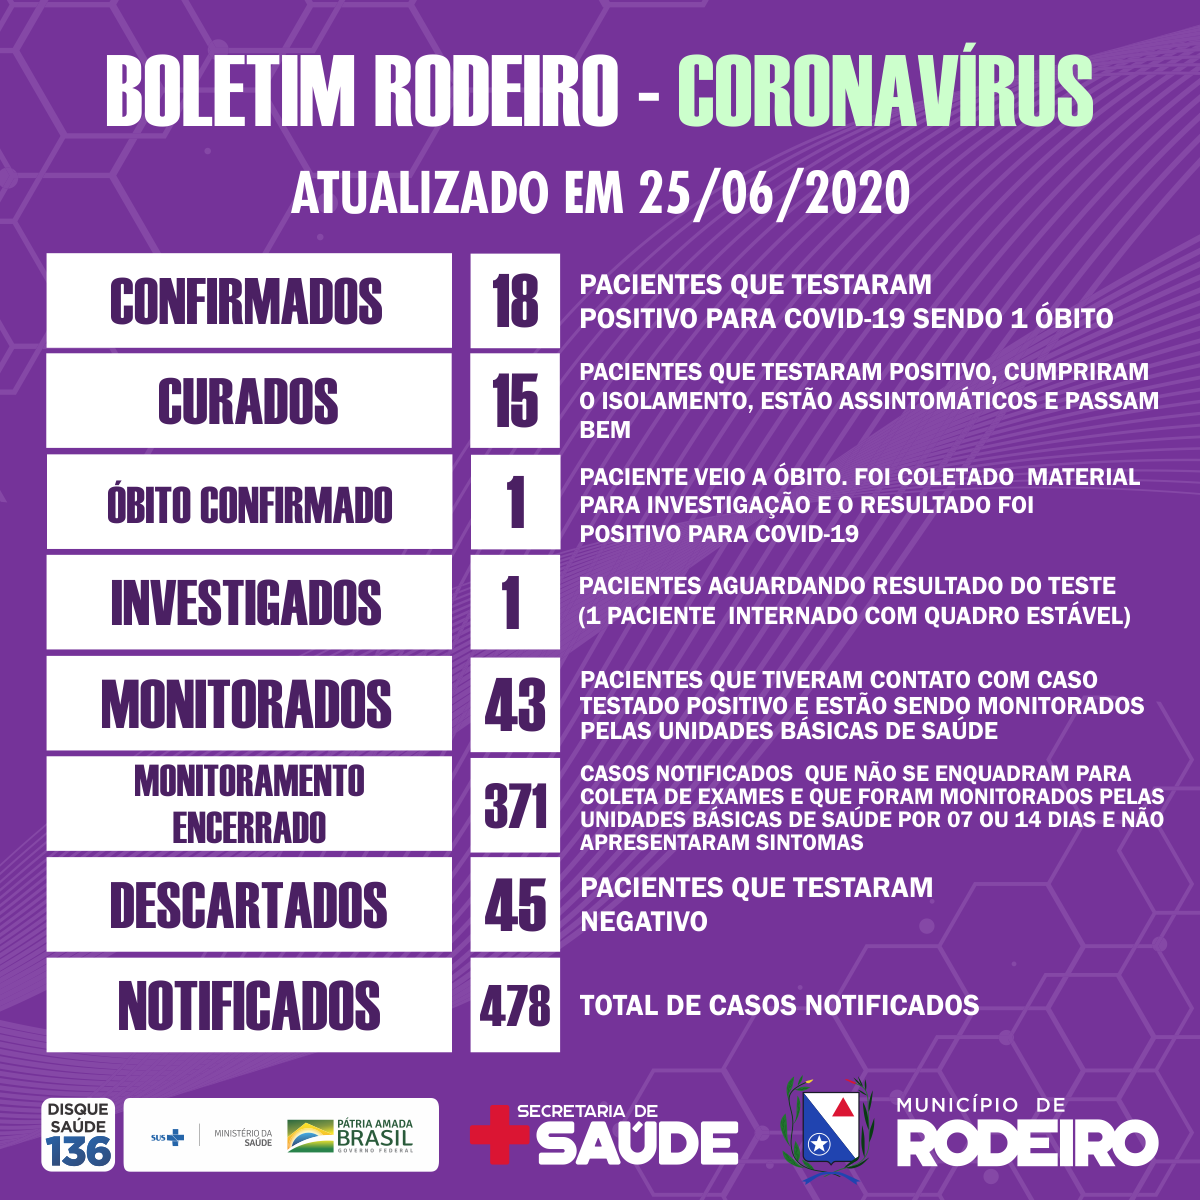 Boletim epidemiológico do Município de Rodeiro coronavírus, atualizado em 25/06/2020